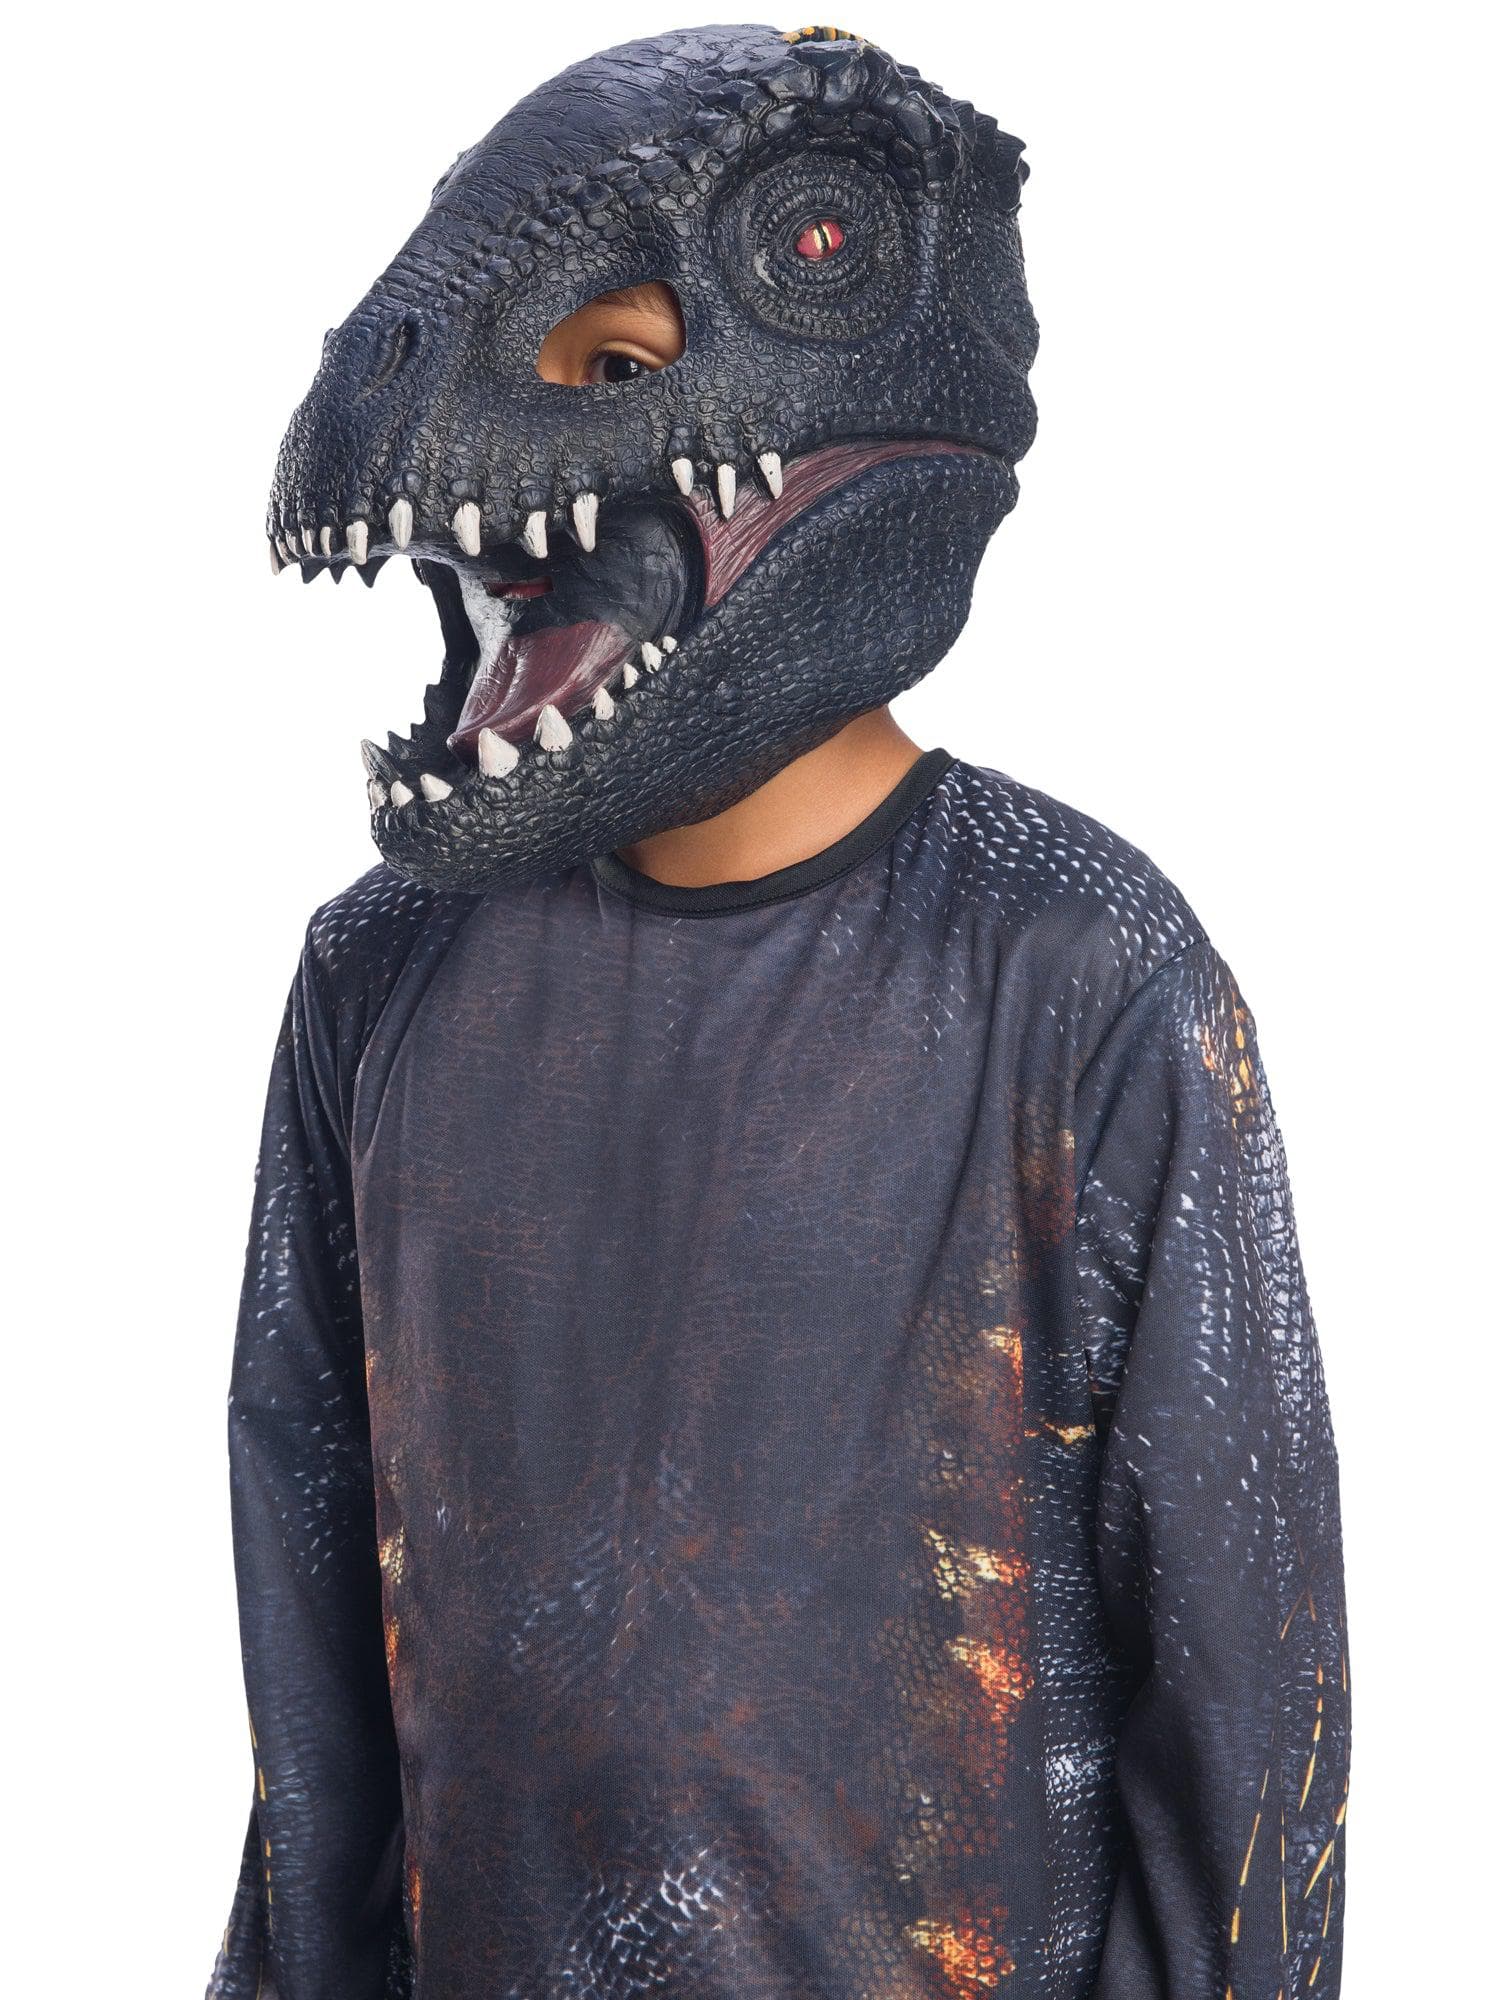 Kids' Jurassic World 2 Indoraptor Half Mask - costumes.com